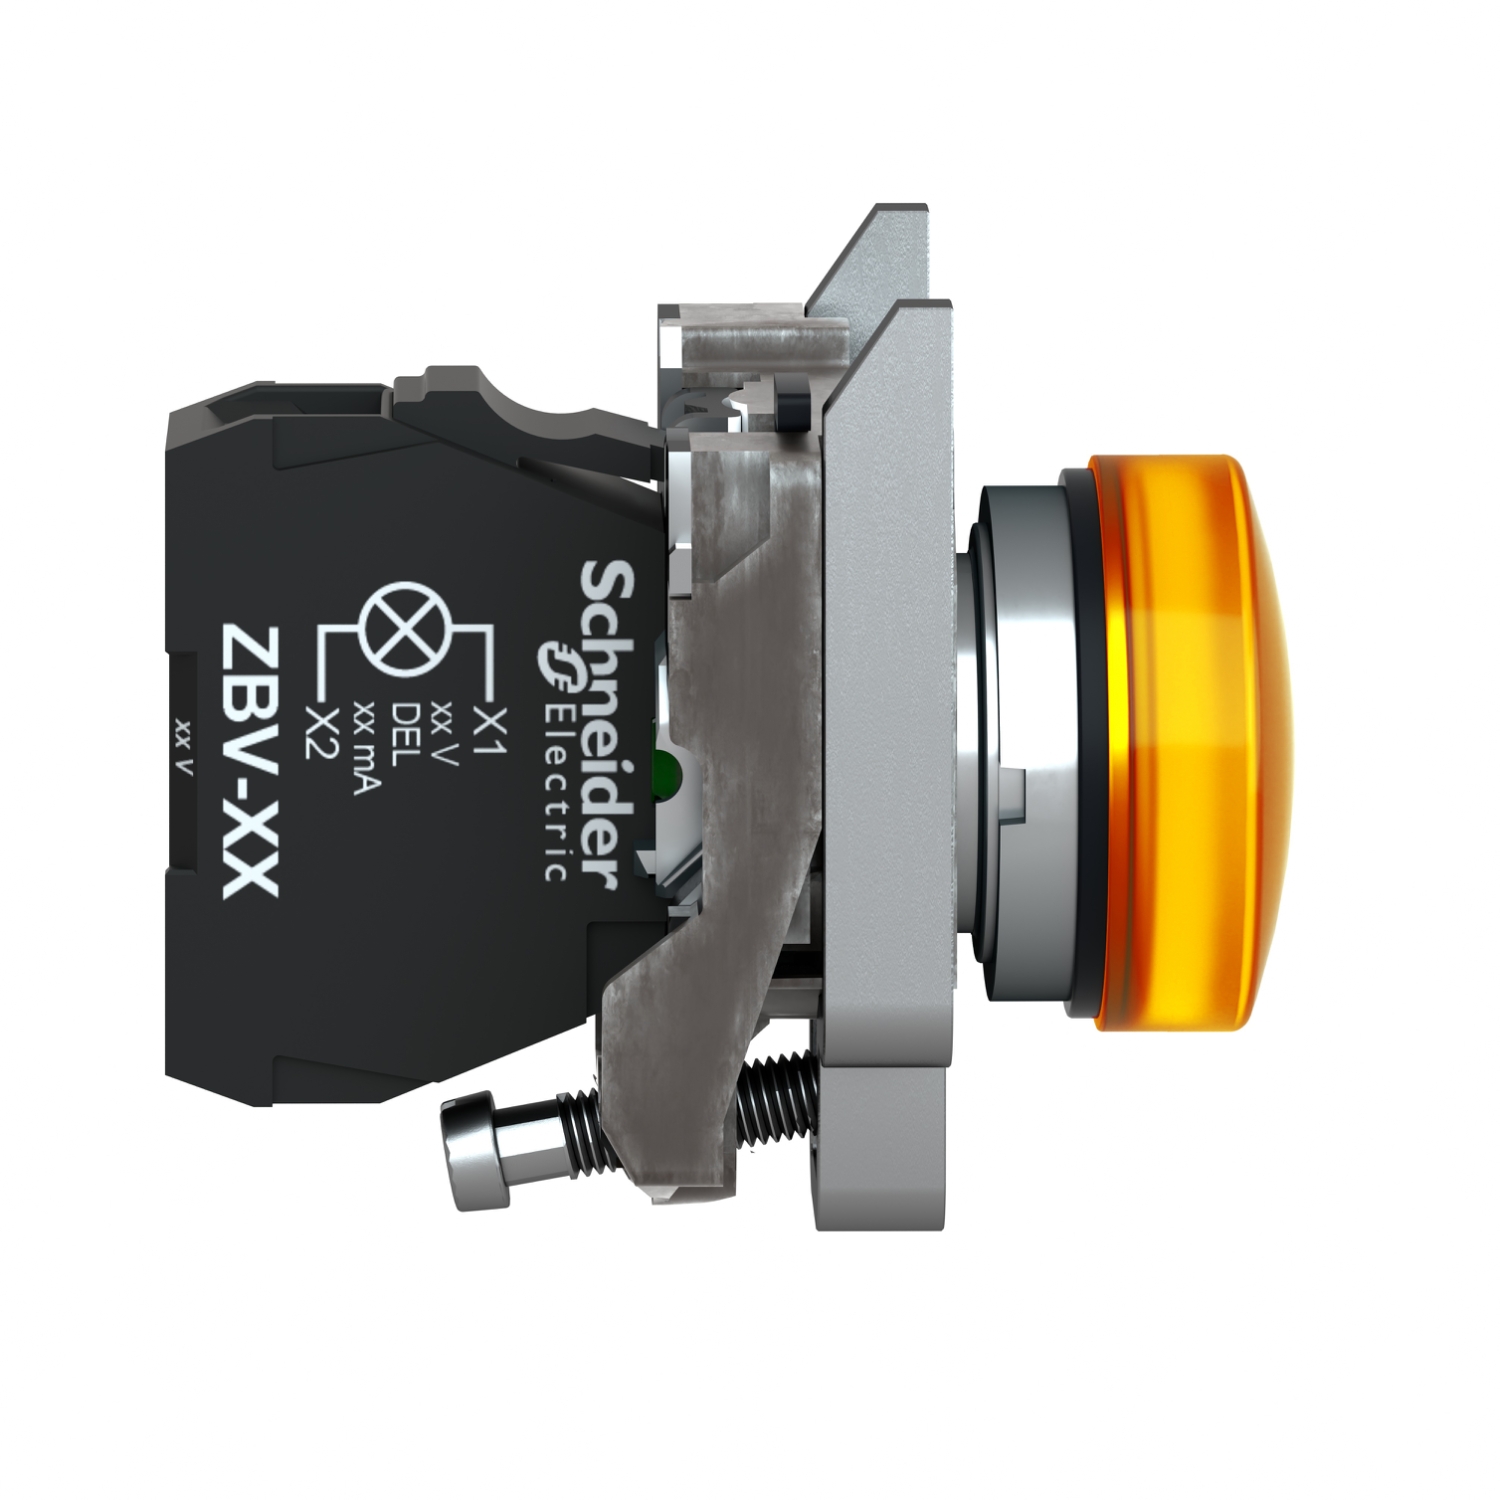 XVBC5B5 Schneider E. Leuchtelement LED Blinklicht orange 24VAC/DC 70mm -  Signalsäulenelement, optisch